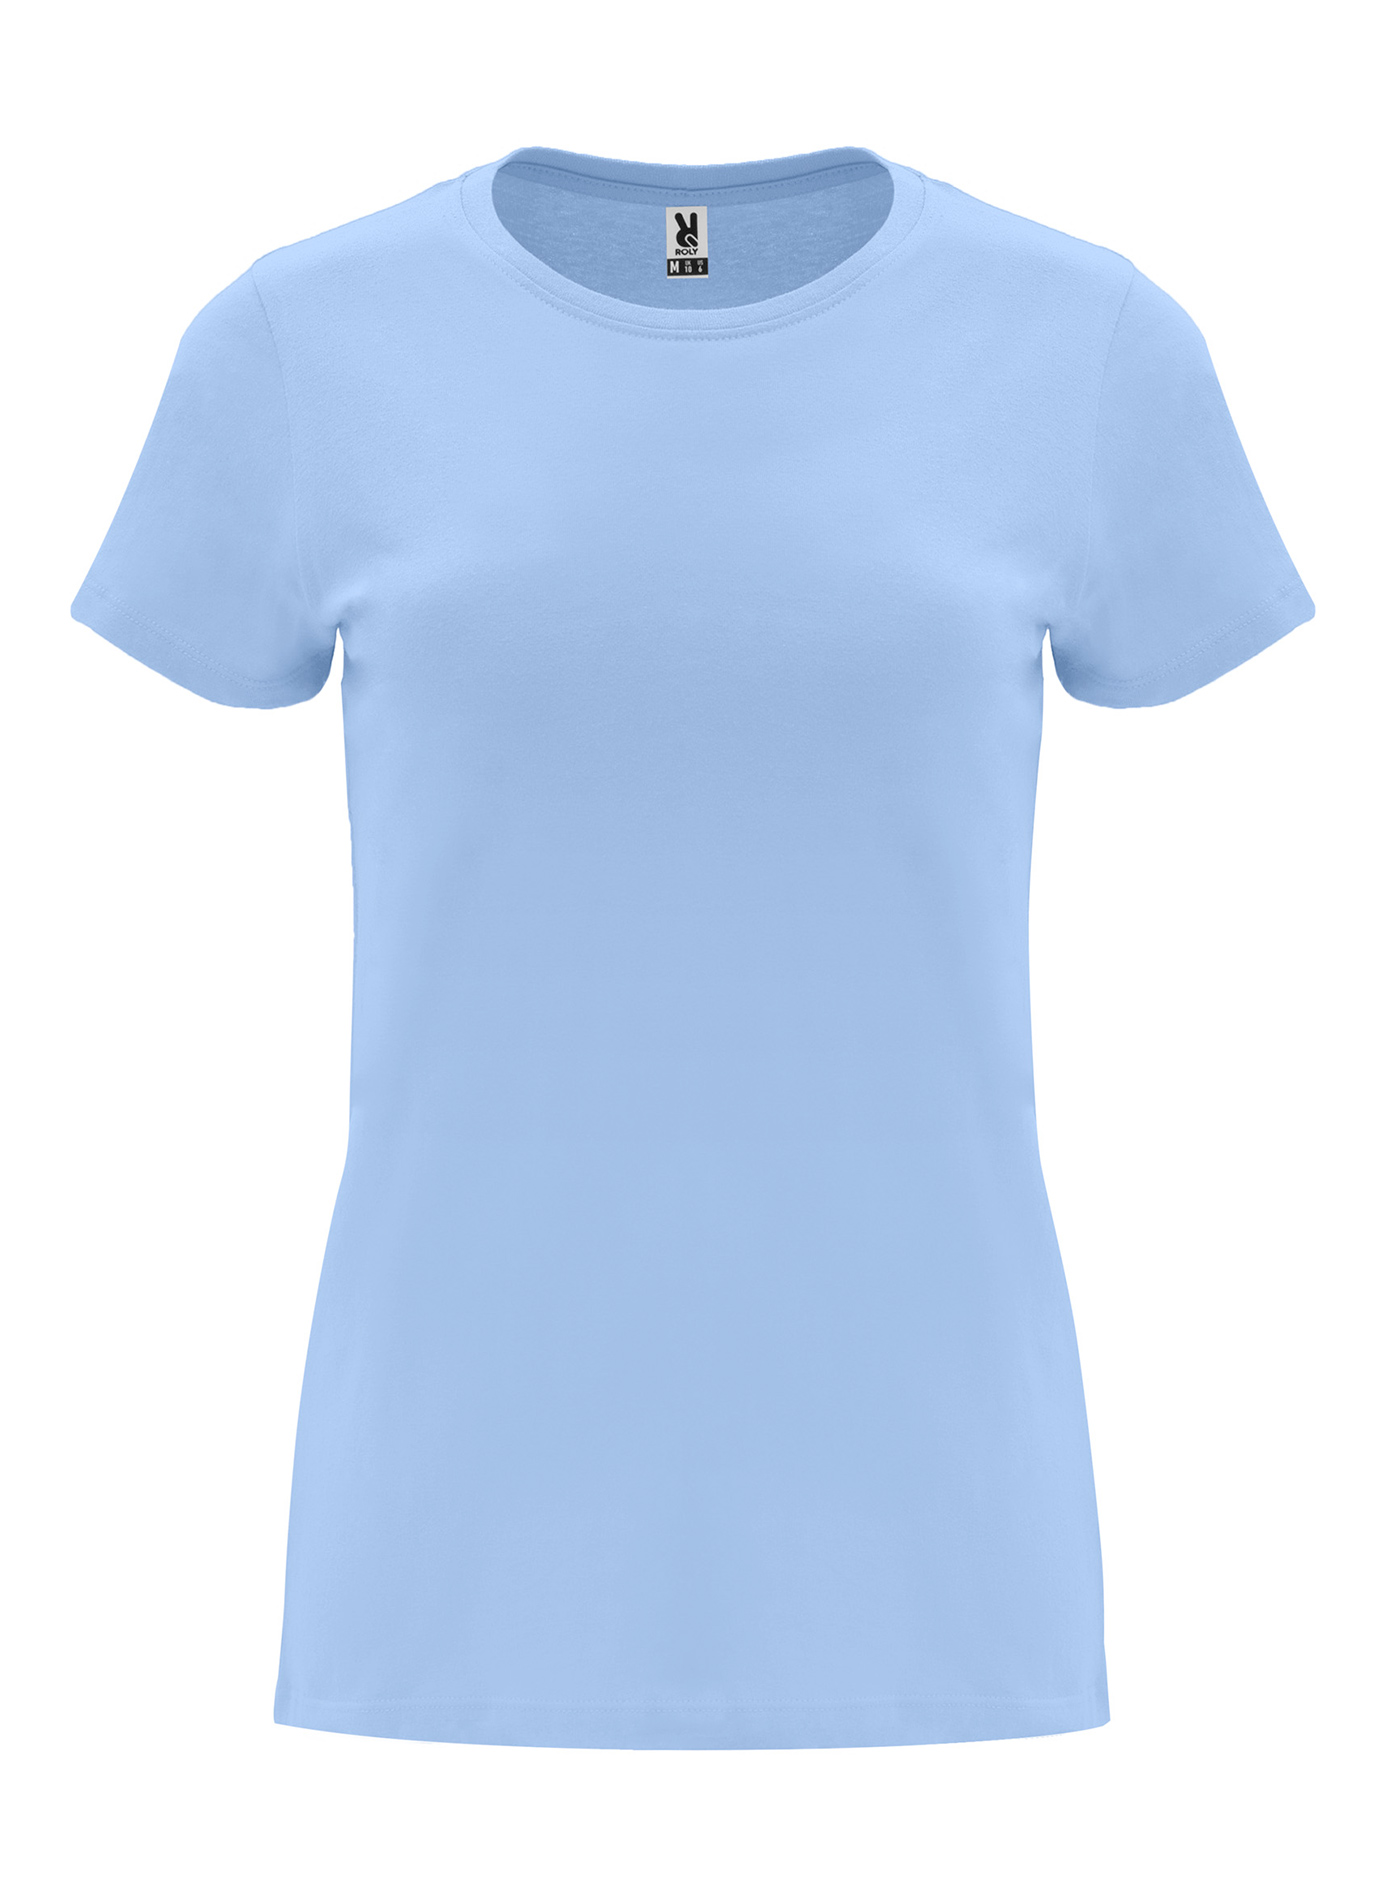 Dámské tričko Roly Capri - Blankytně modrá S